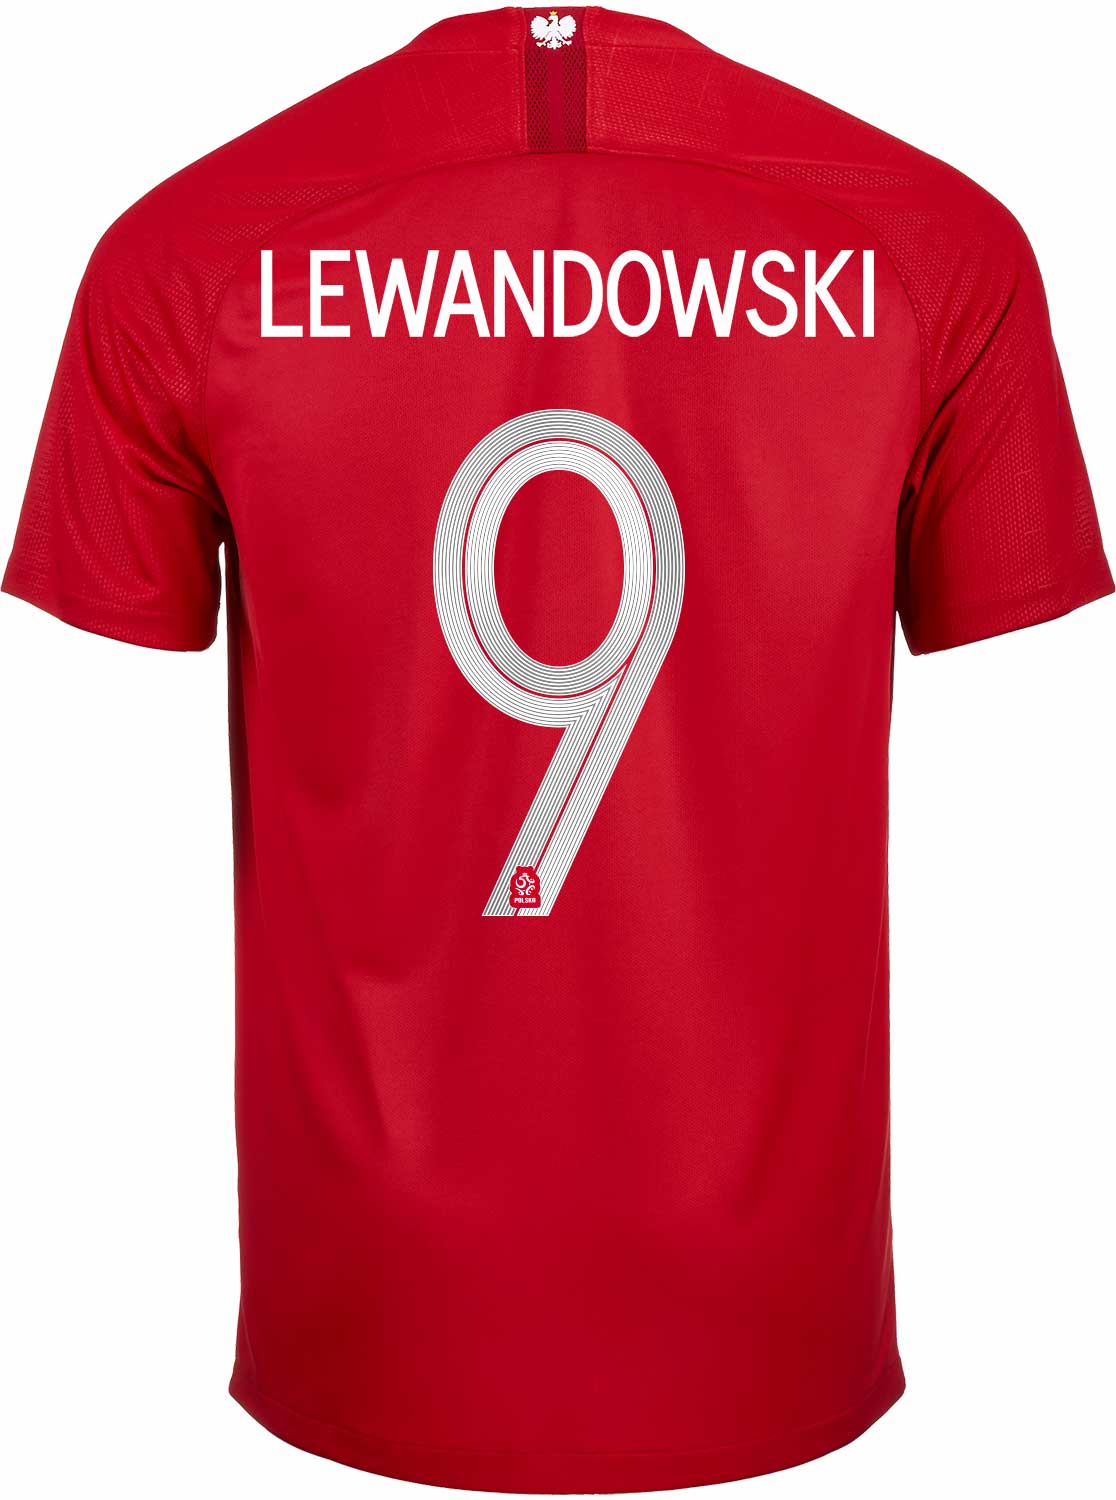 Lewandowski Football T-shirt+shorts+socks Poland 2019 strój Lewandowski Polska